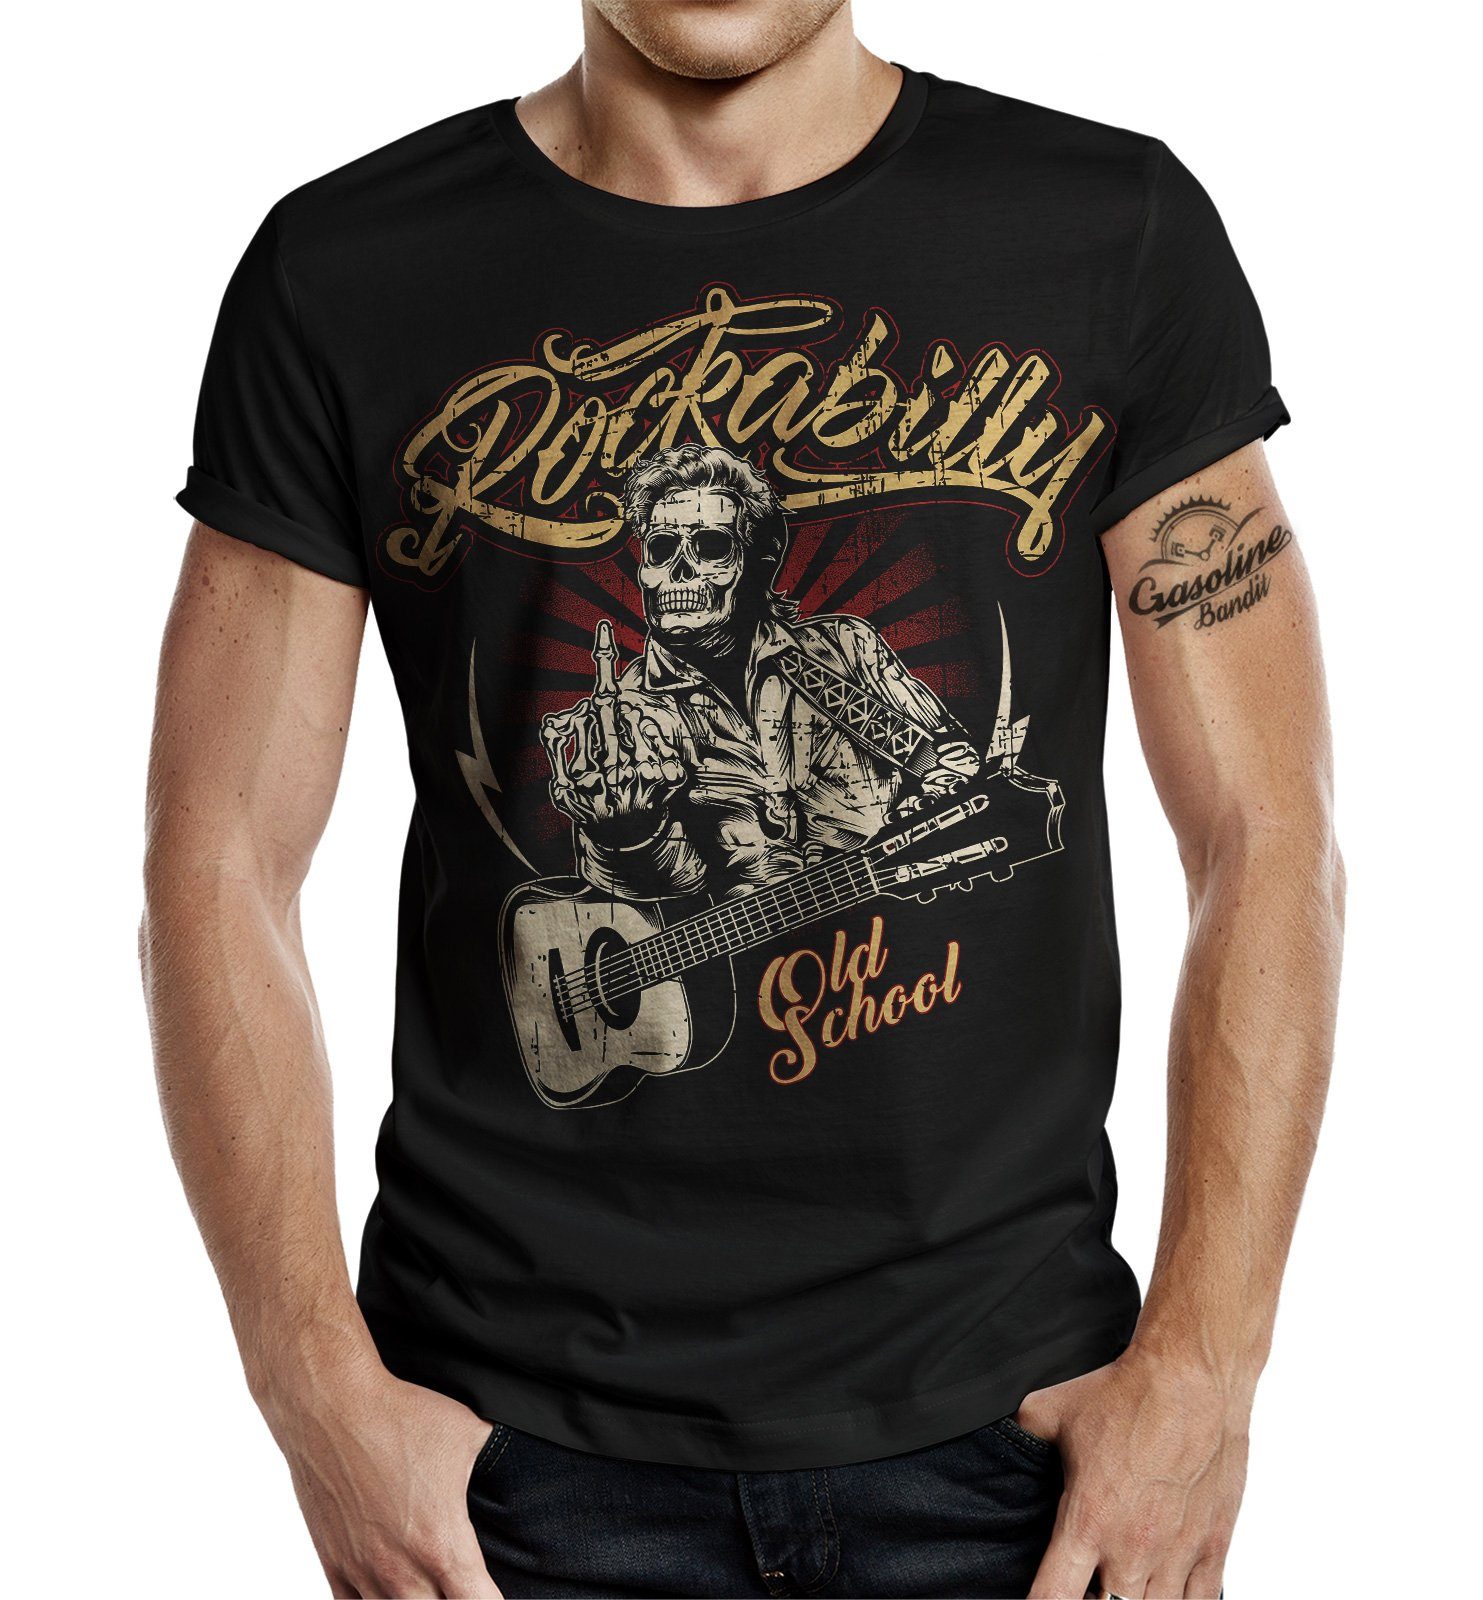 Style: Old Shool Roll BANDIT® im Good T-Shirt Times Rockabilly Rock'n GASOLINE